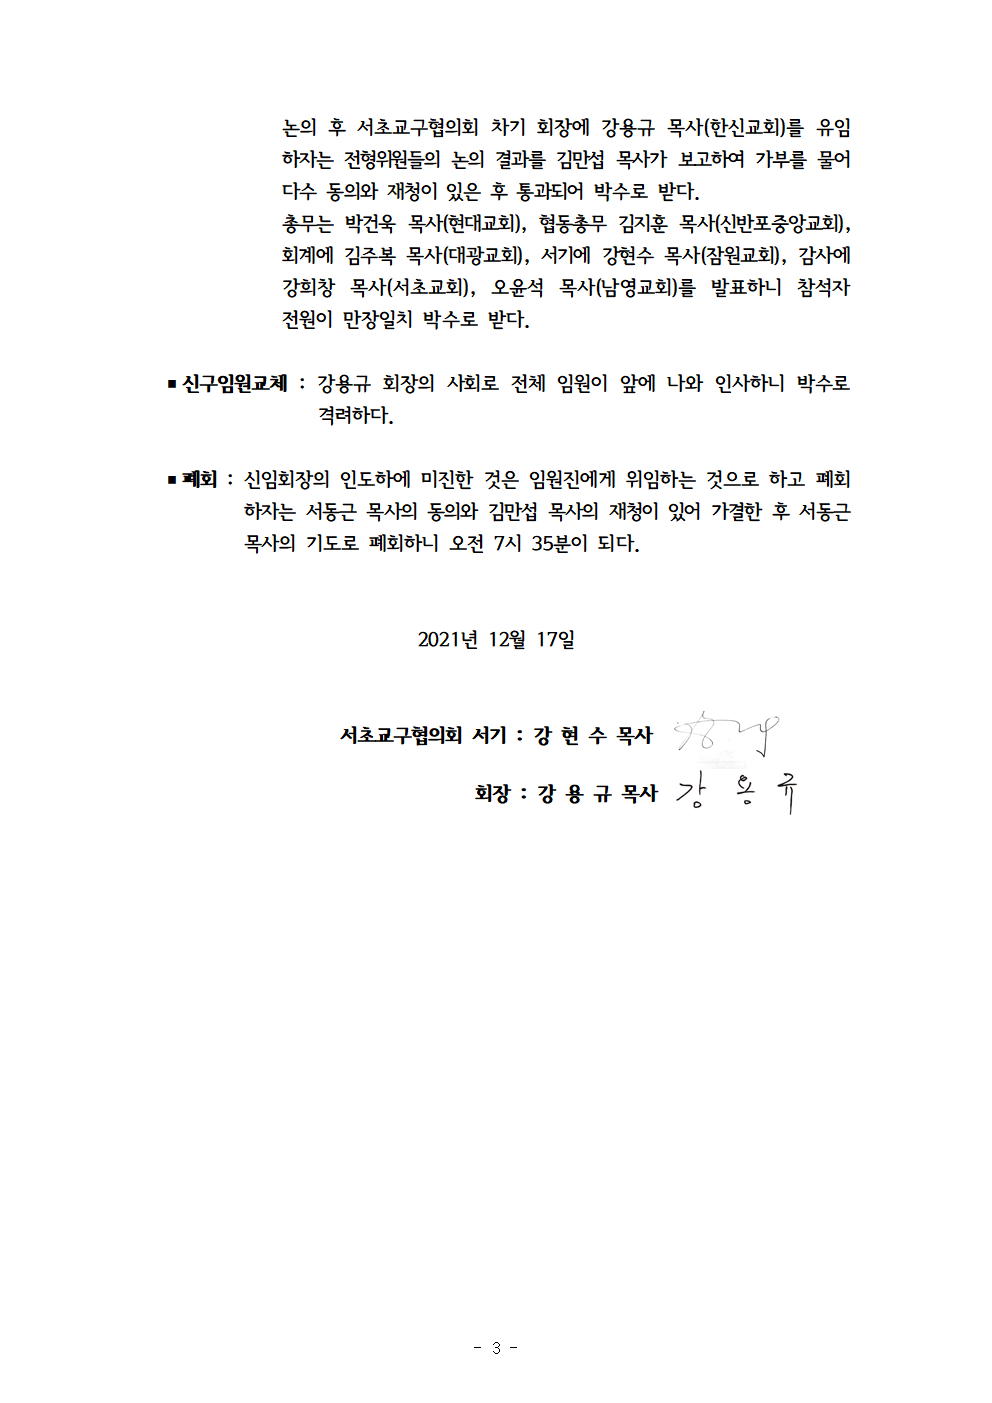 2021회기 서초교구협의회 정기총회자료(12.17)_홈피용004.png